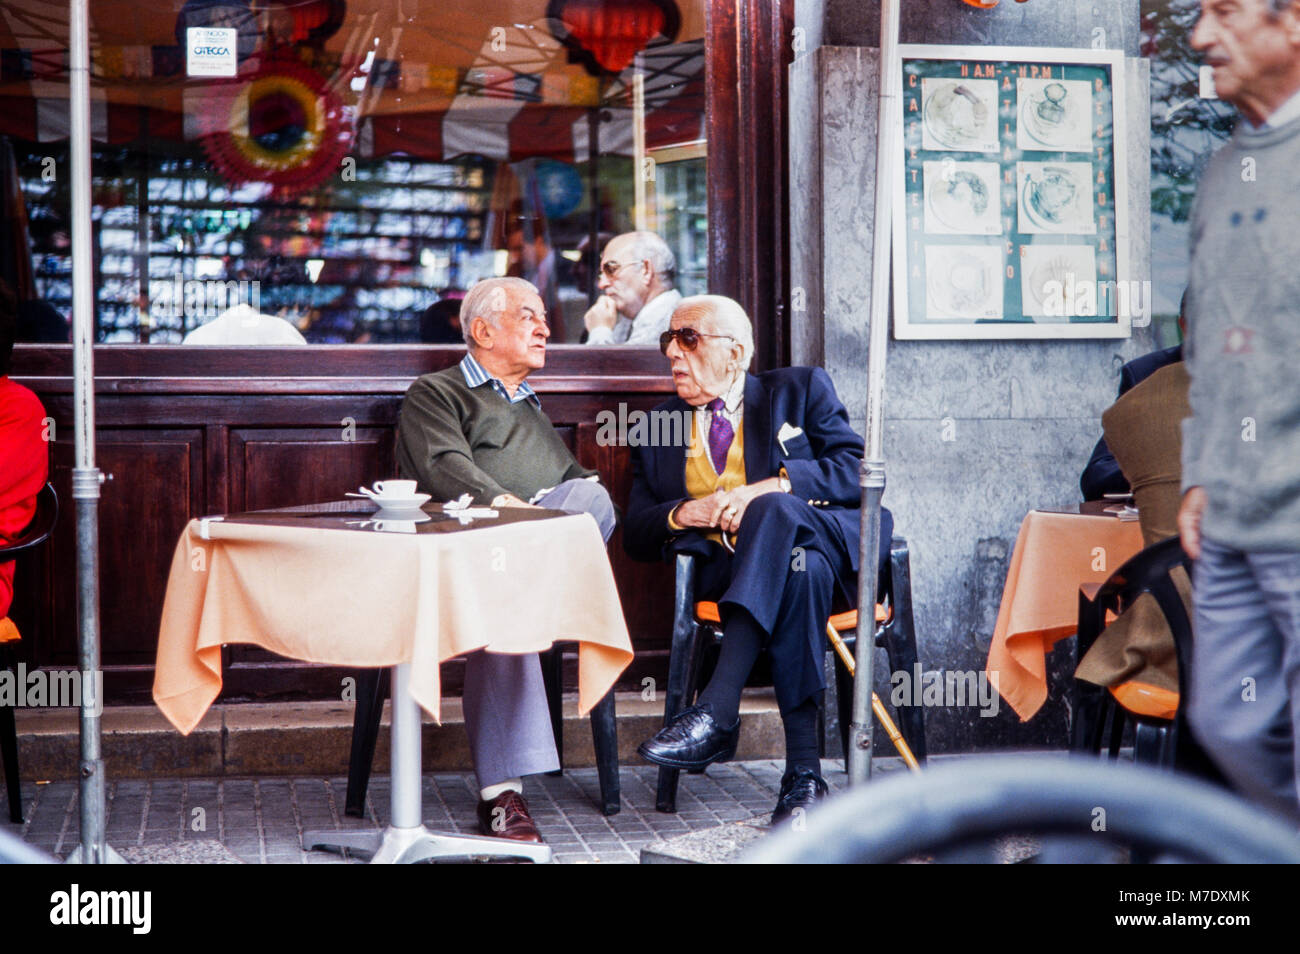 Les hommes âgés assis de conversations au café à l'Atlantico cafe, bar, Santa Cruz, photographie d'archives, 1994, Tenerife, Canaries, Espagne Banque D'Images